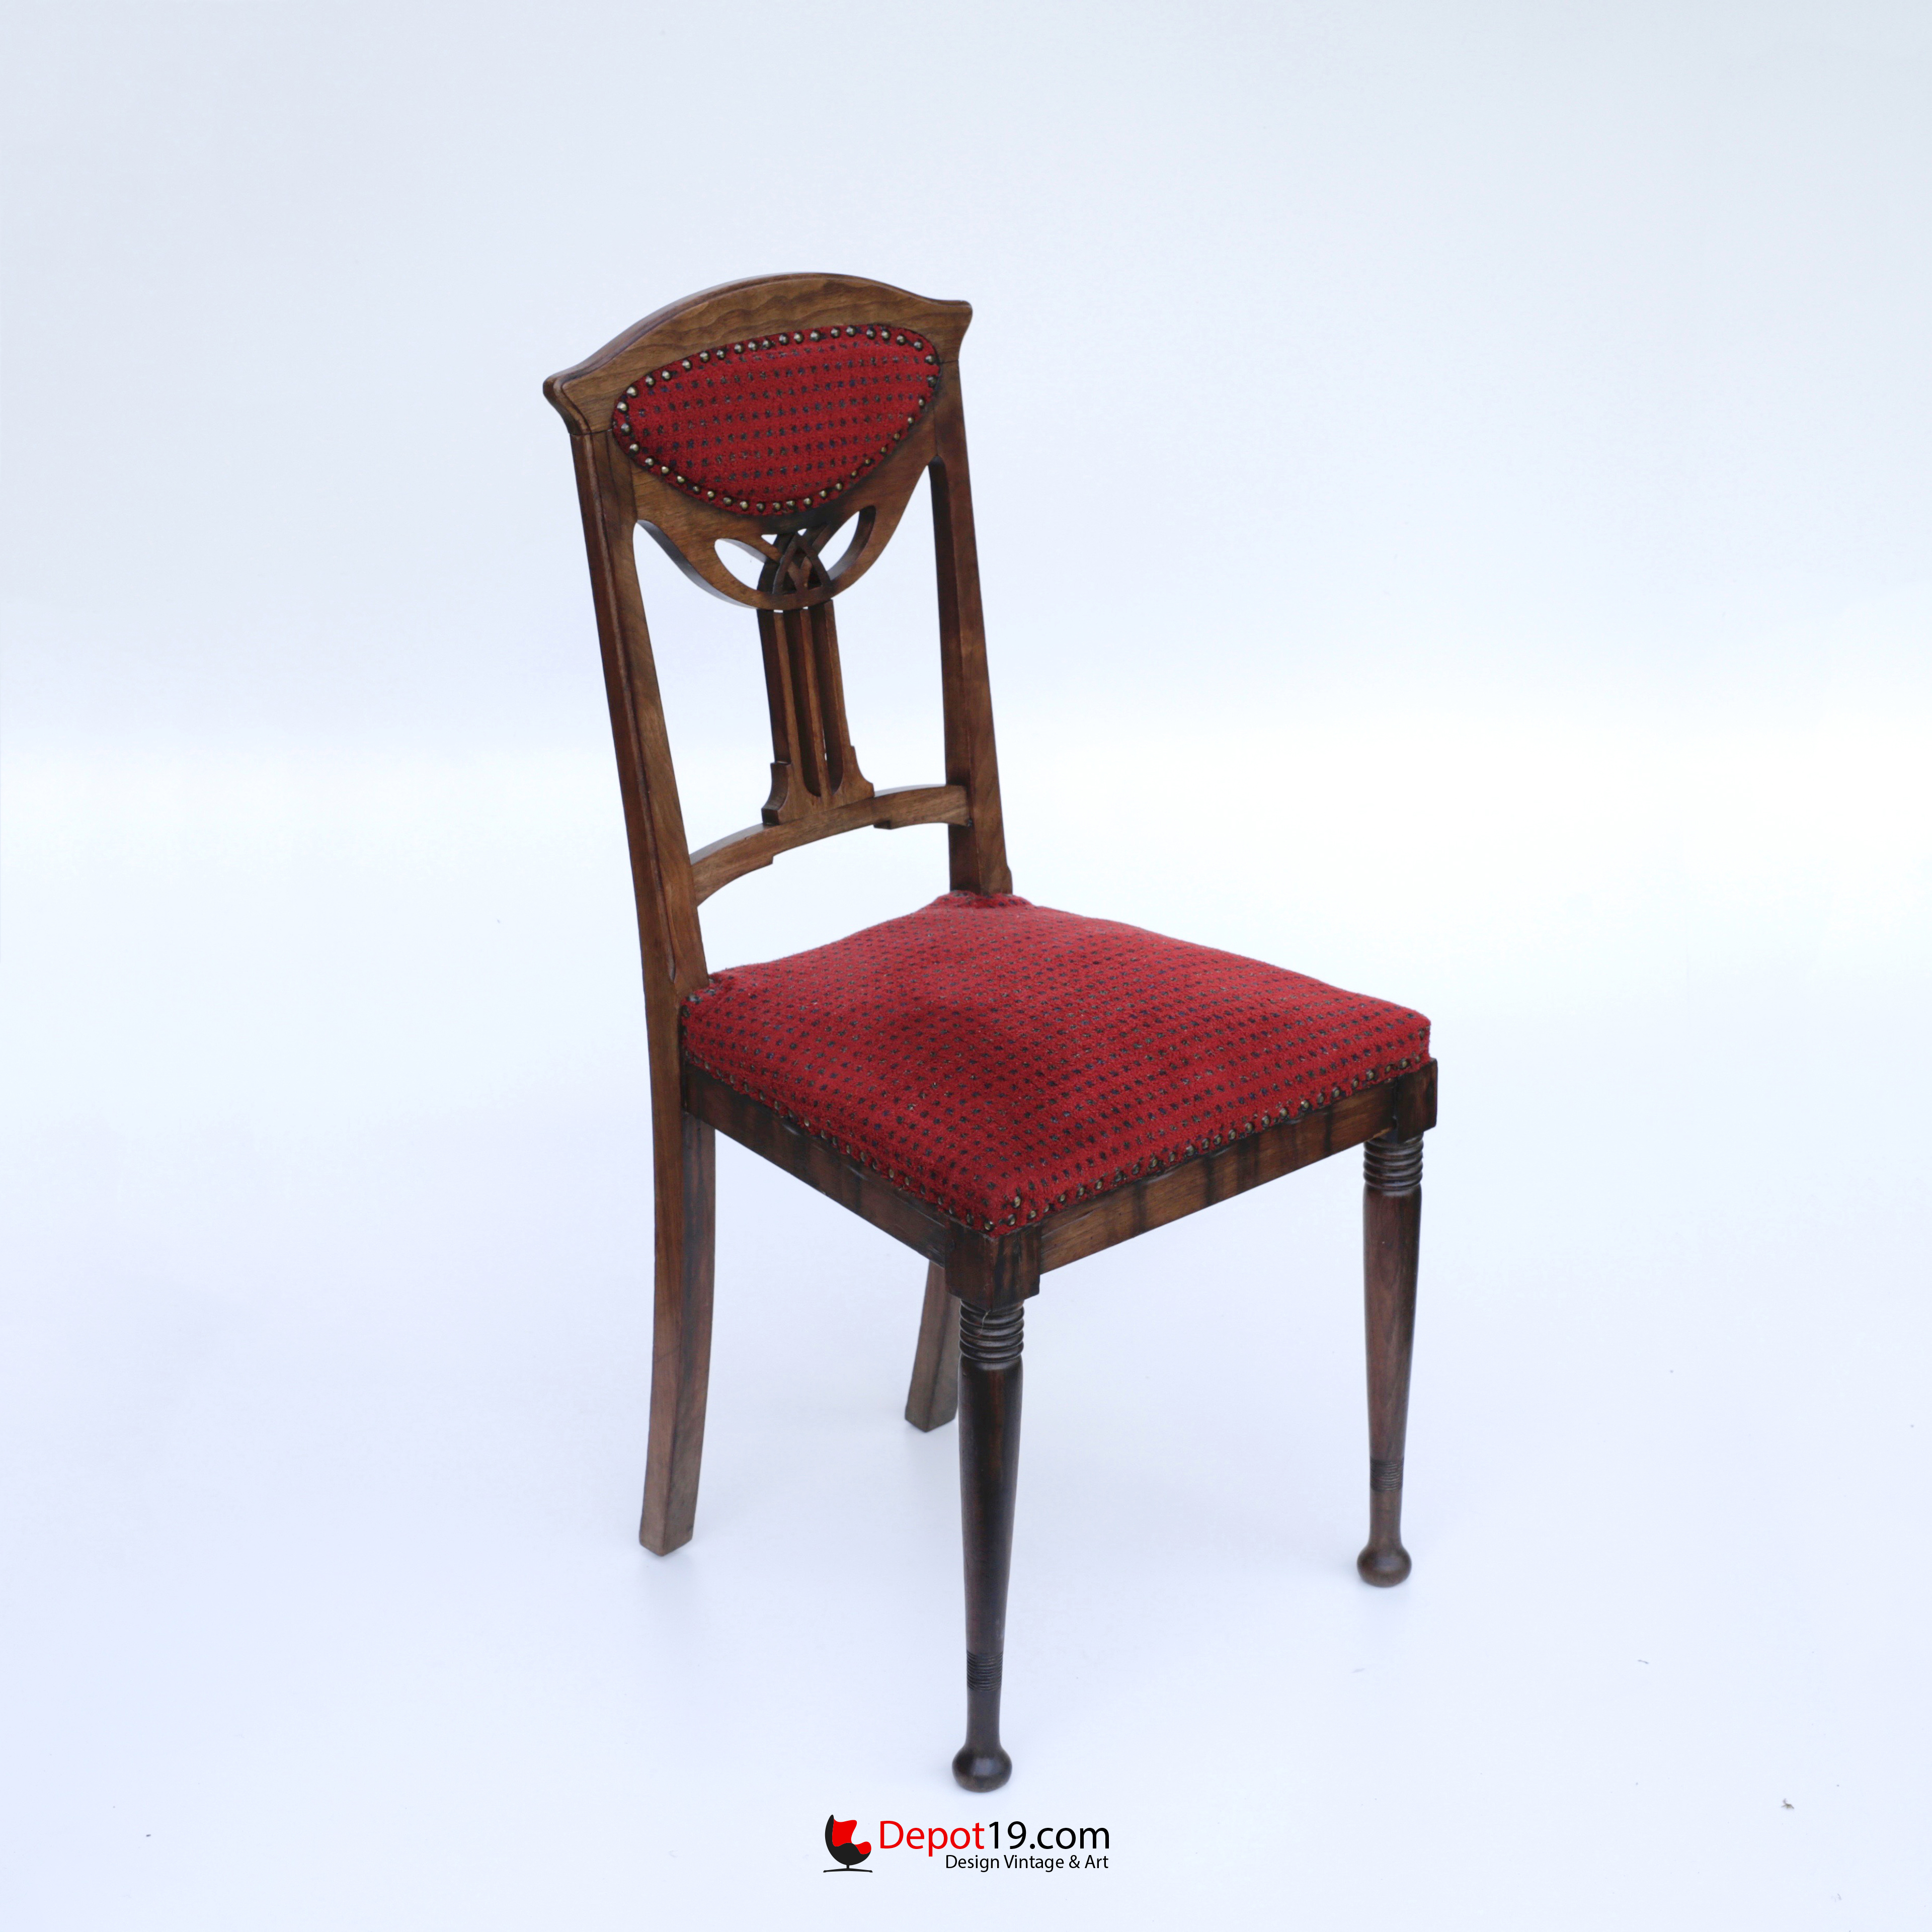 doel Doe mijn best Bestaan Jugendstil art deco stijl stoel met houtsnijwerk | Depot 19